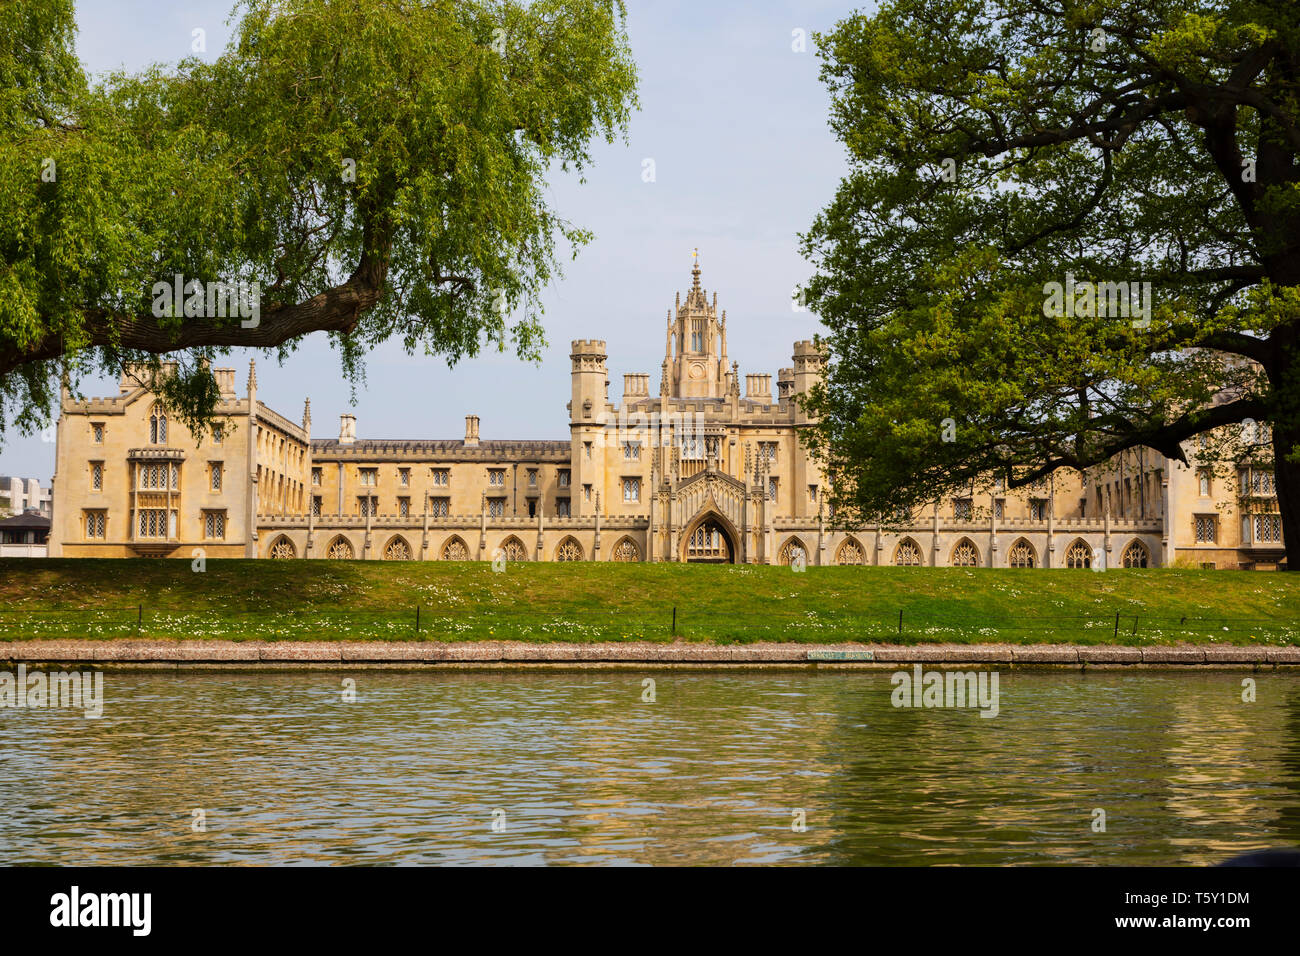 St Johns College vu de la rivière Cam, ville universitaire de Cambridge, Cambridgeshire, Angleterre Banque D'Images